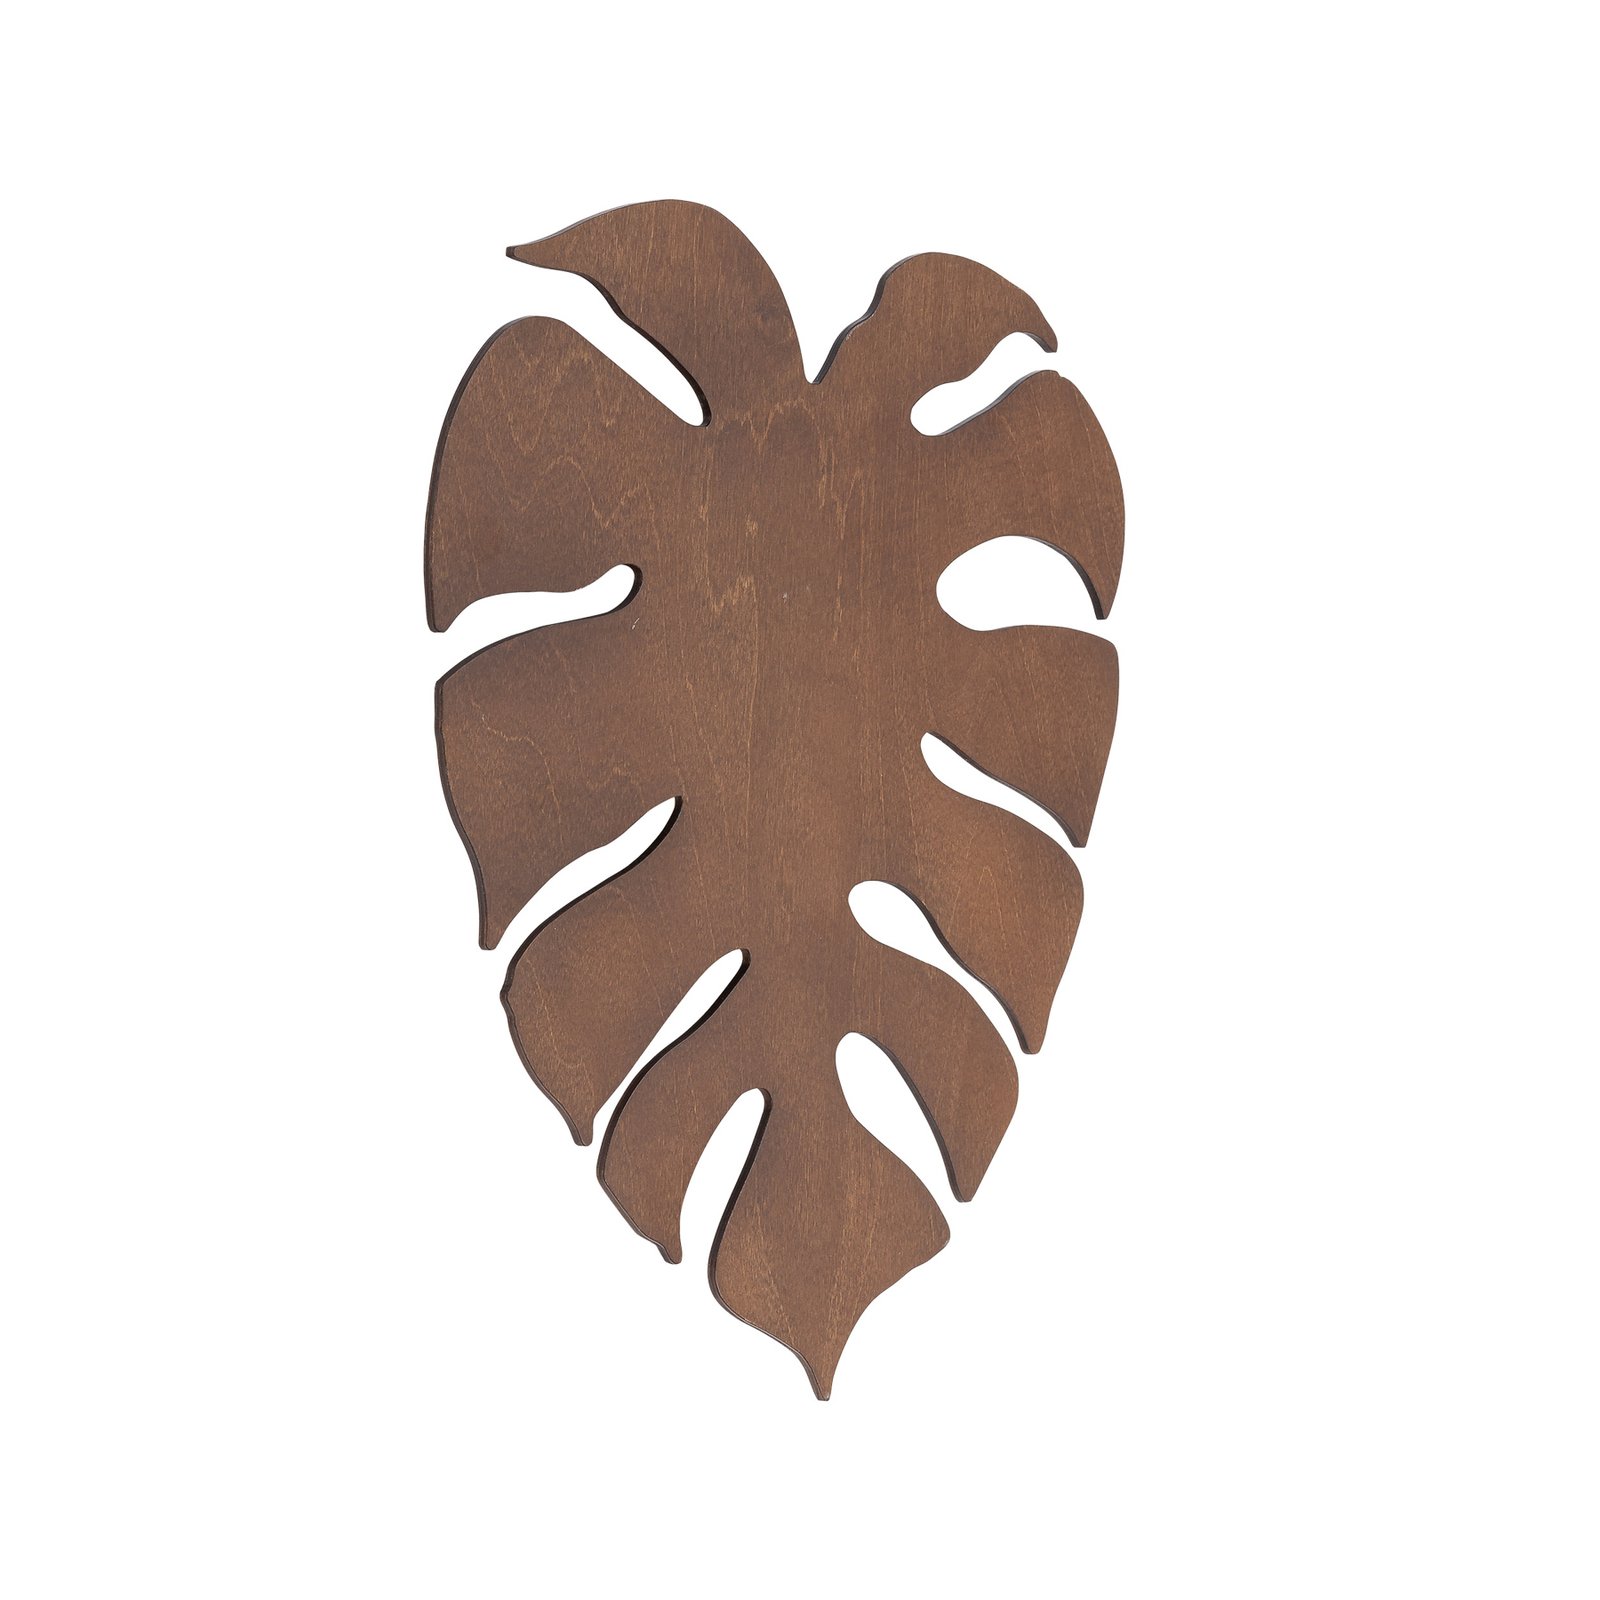 Envostar Folah wall light, leaf shape, walnut, 40 x 35 cm